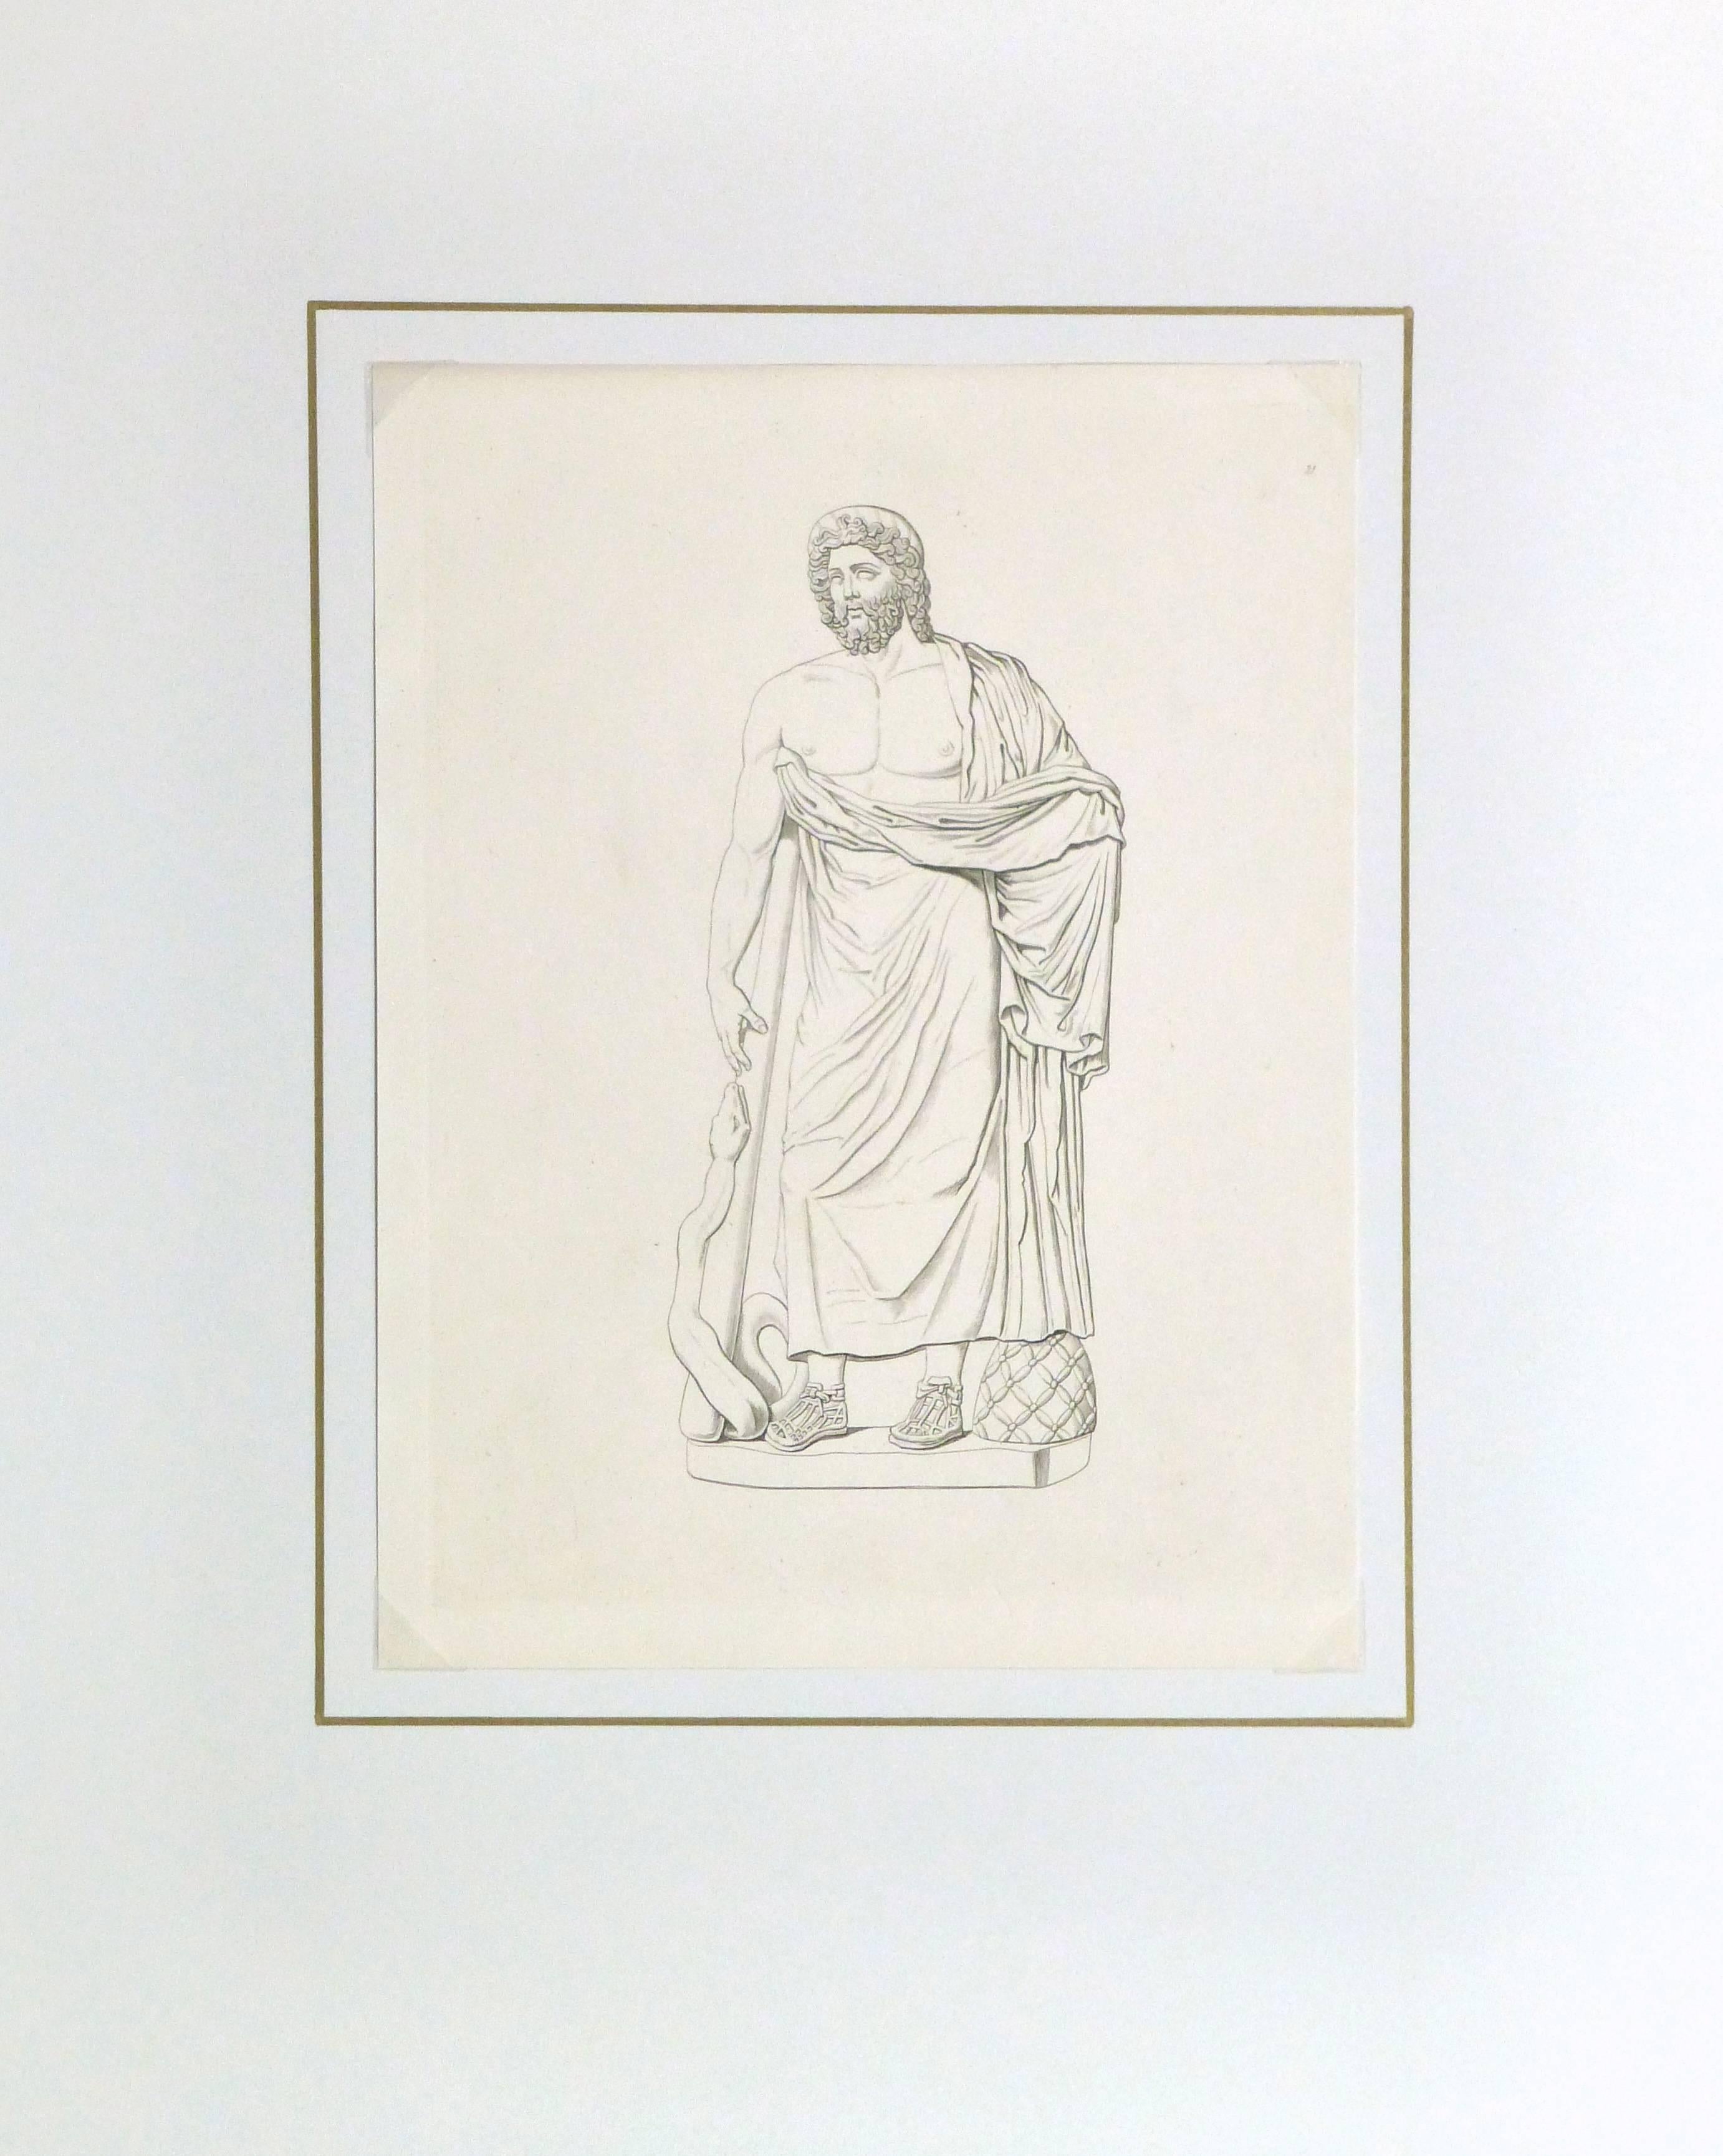 Gravure au trait en cuivre ancienne d'une statue masculine de style romain, tendant un bras tendu vers un serpent, vers 1850.

Œuvre d'art originale sur papier présentée sur un tapis blanc avec une bordure dorée. Pochette plastique d'archivage et